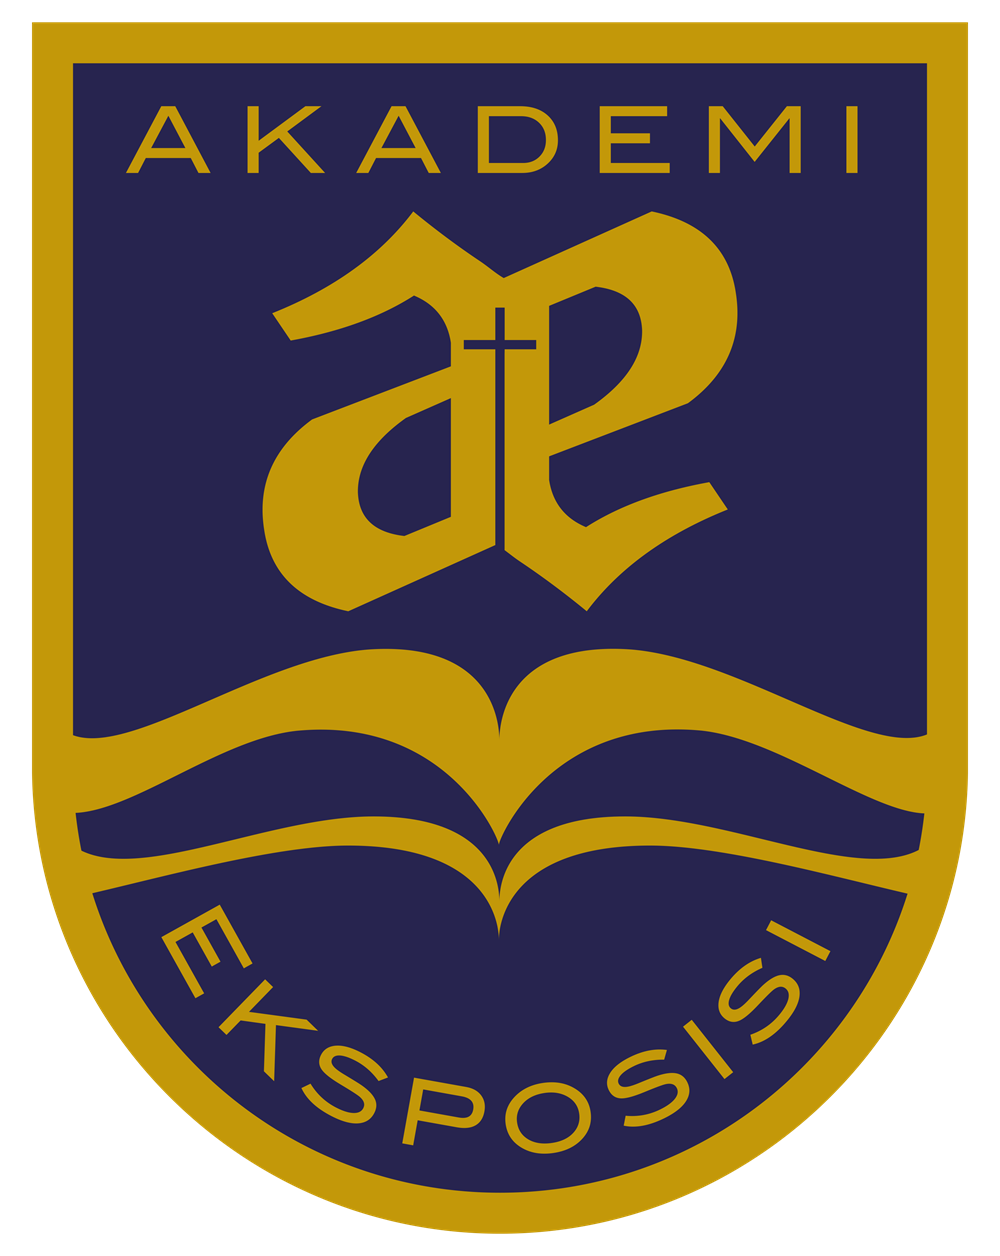 Akademi Eksposisi